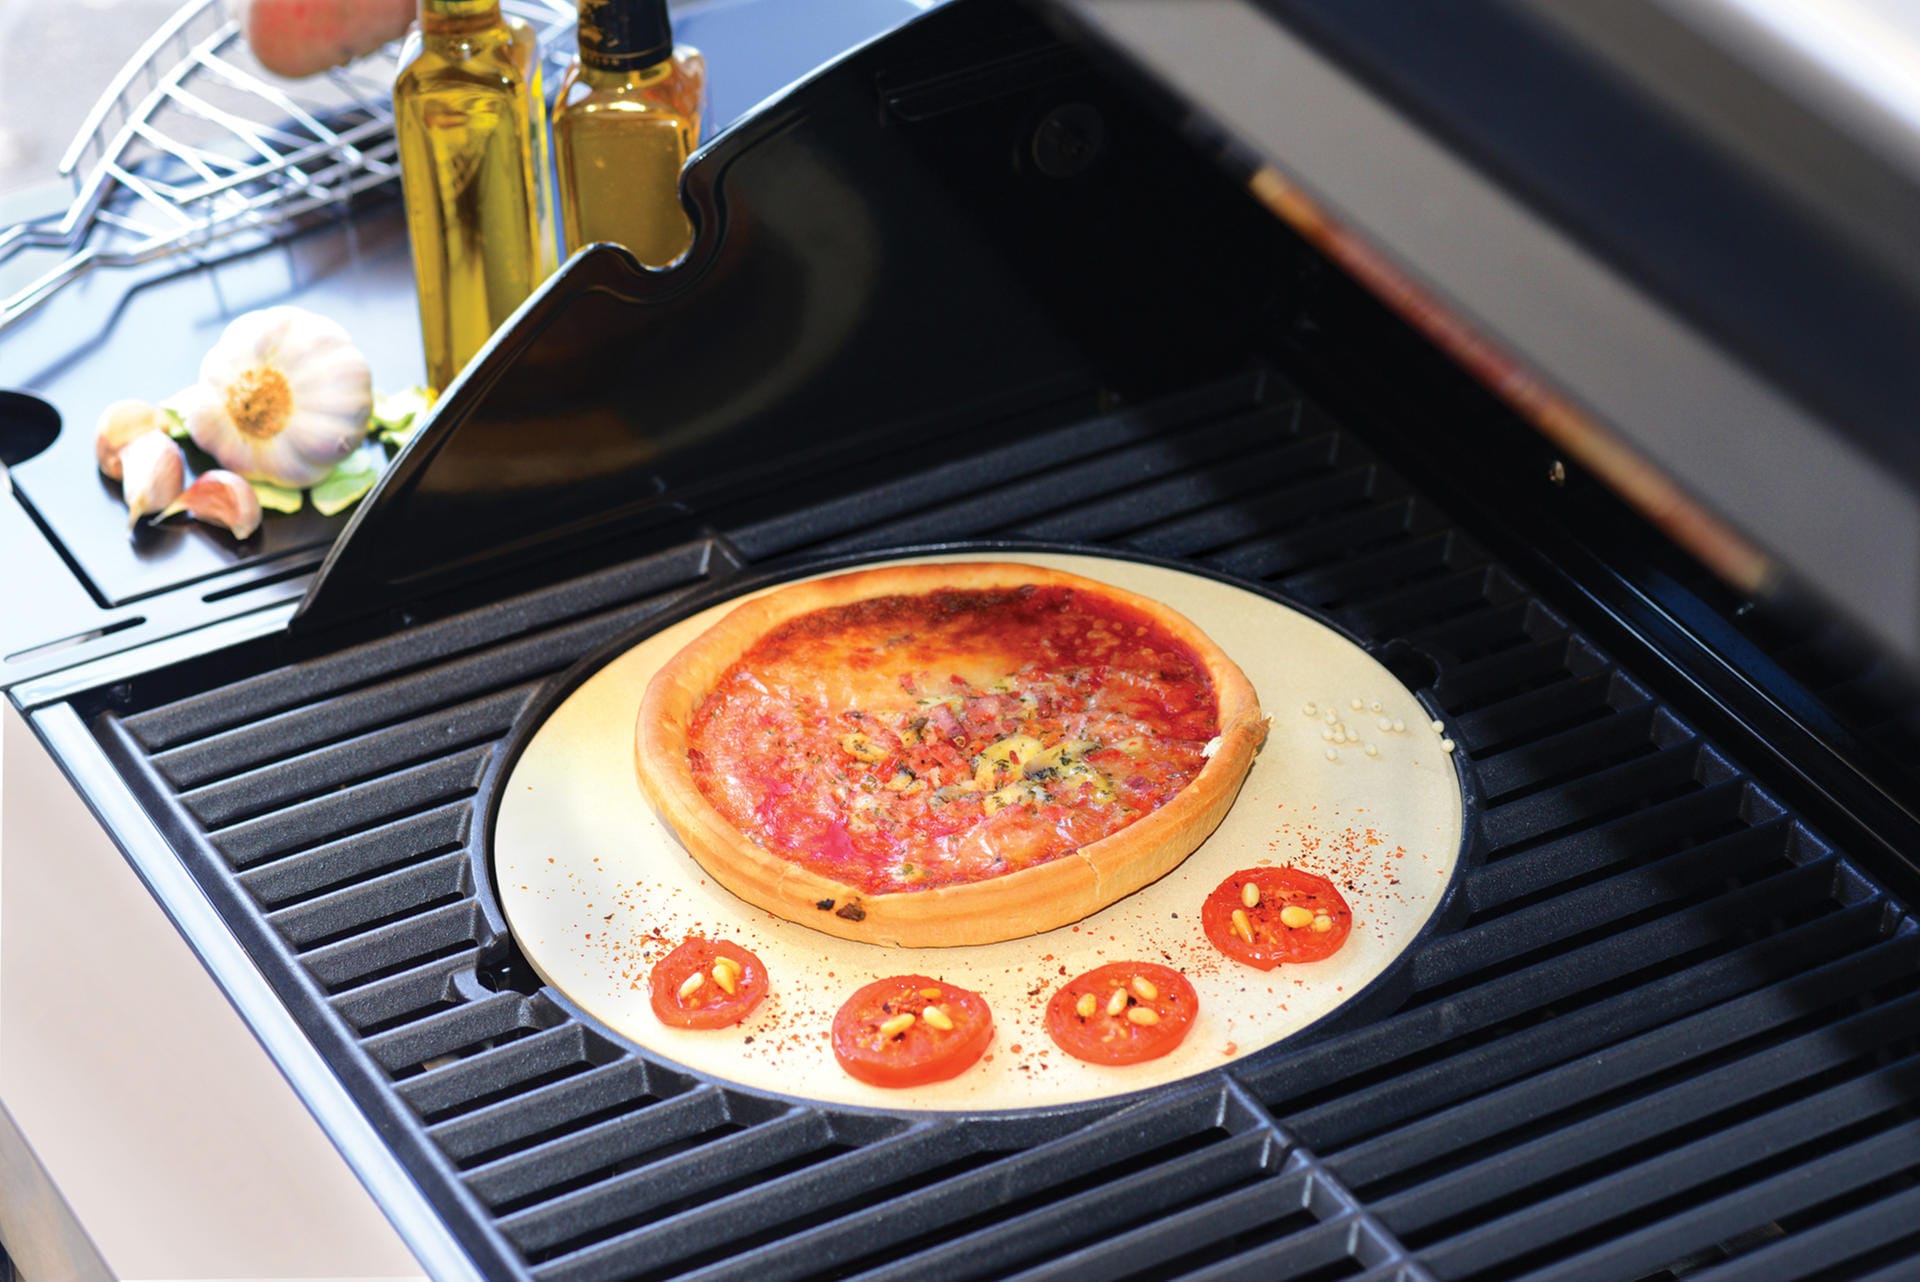 Ein weiterer Trend, auf den viele Hersteller in diesem Jahr setzen, sind Pizzasteine. Oft können diese je nach Belieben in Grillgeräte integriert und wieder herausgenommen werden - so wie zum Beispiel bei den "Ceramic BBQ", dem "BBQ Compacto" und weiteren Geräten des Herstellers Berghoff.